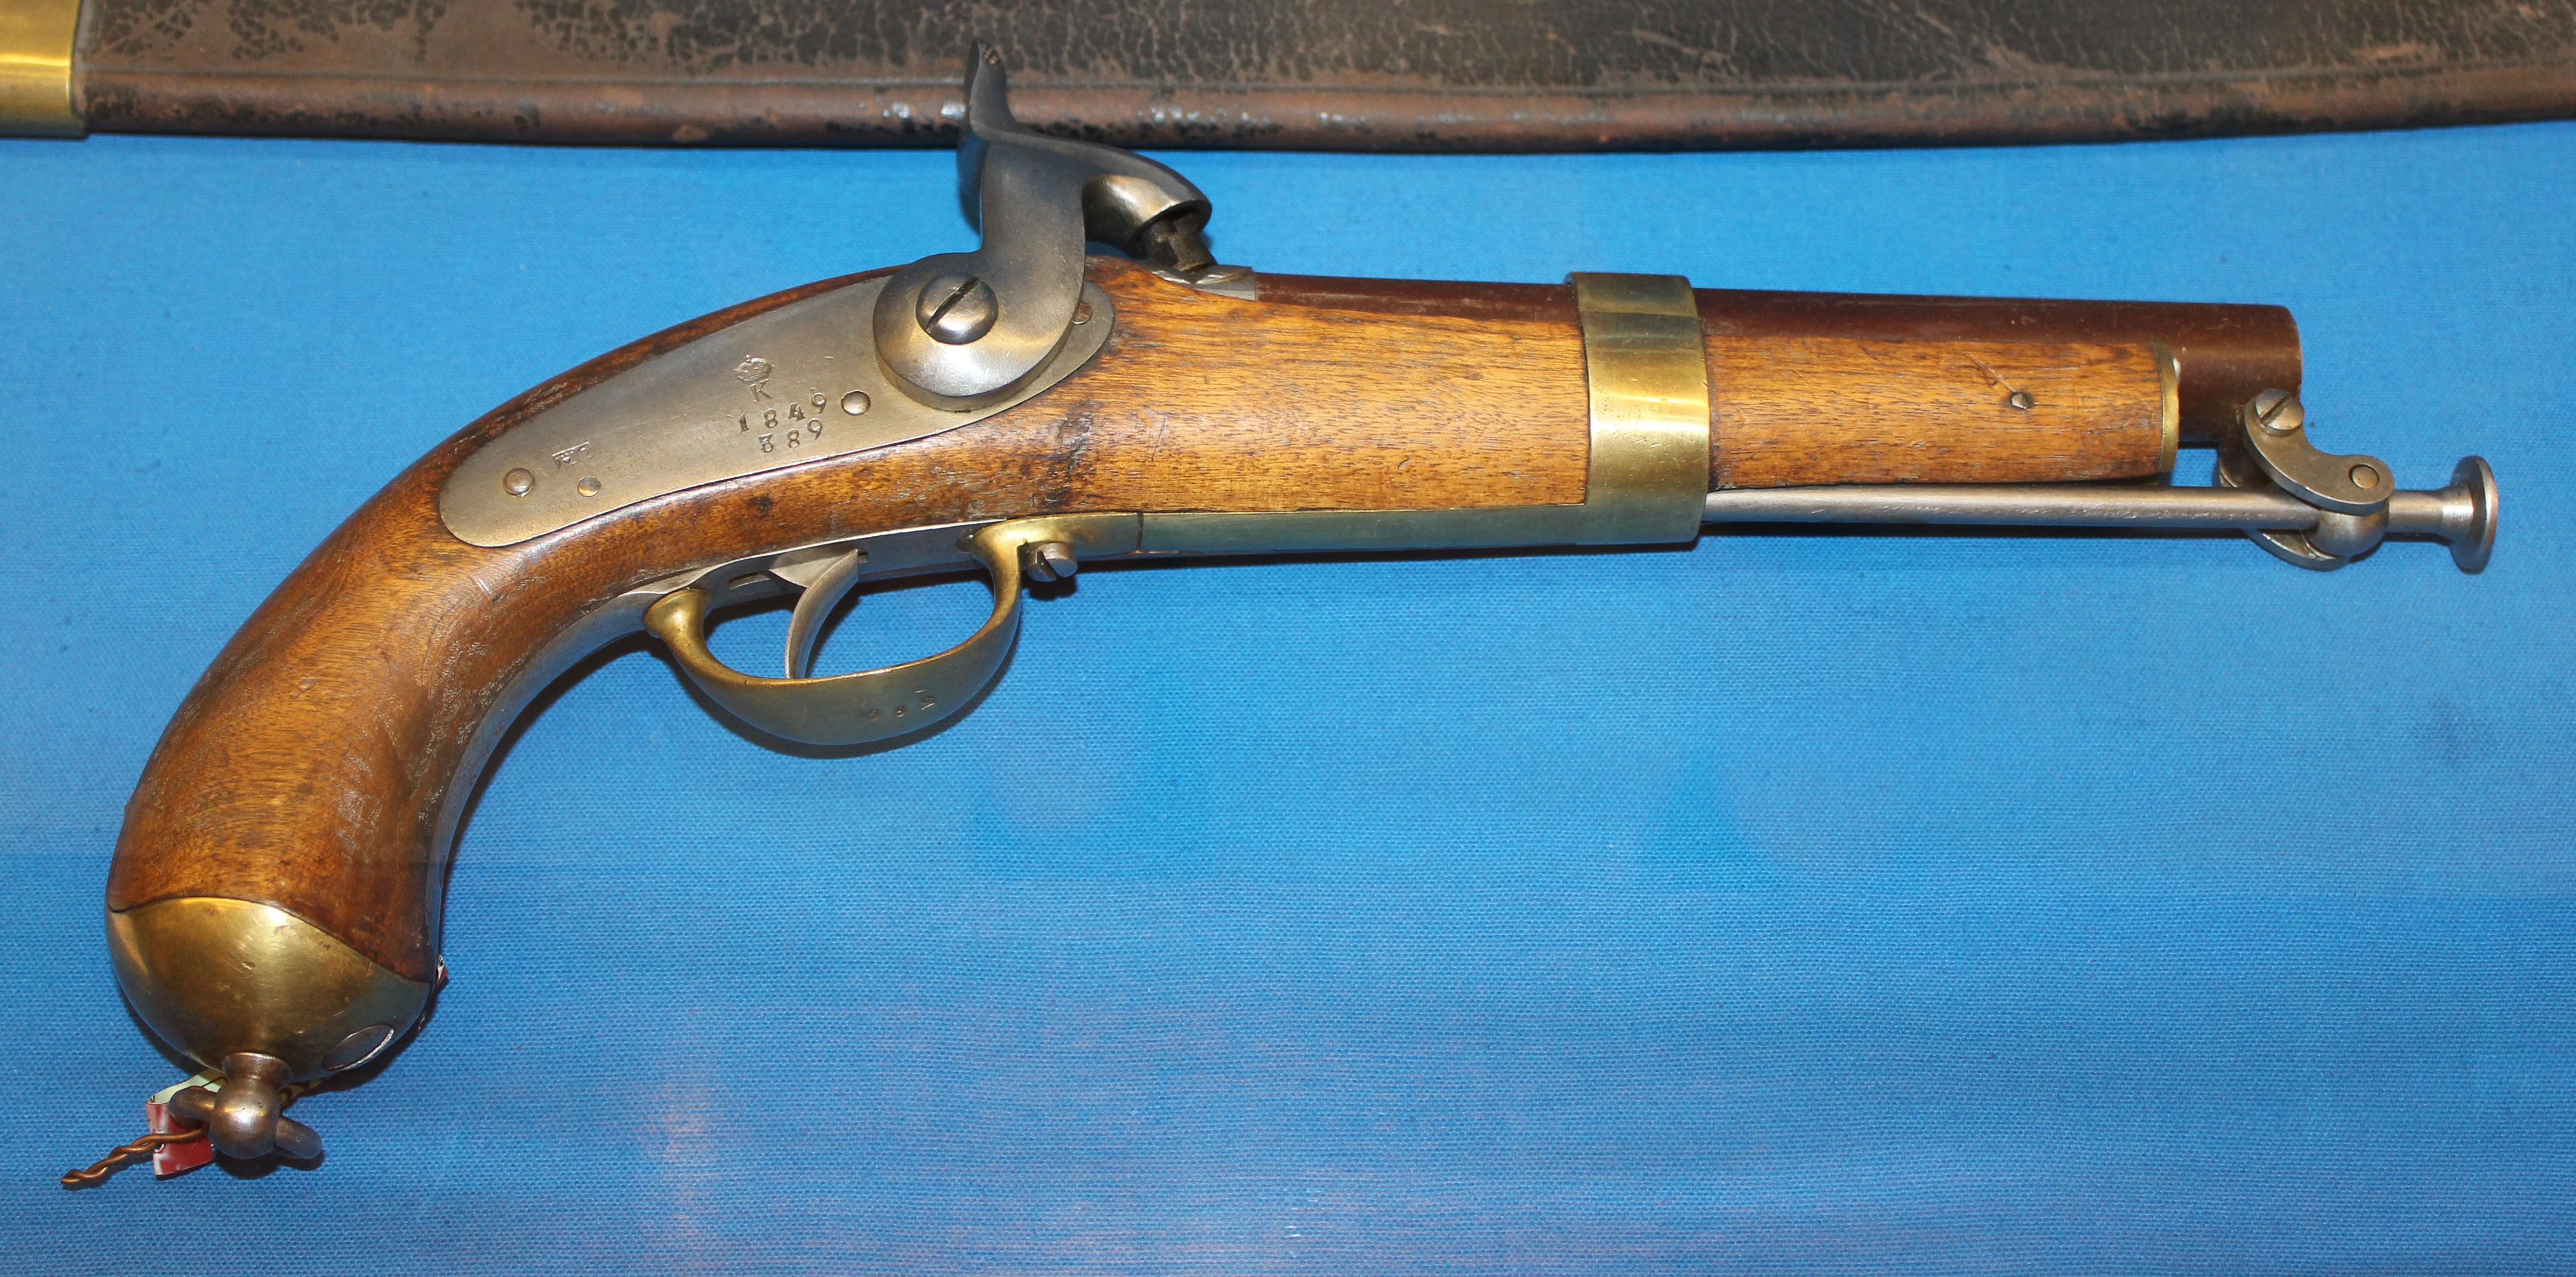 ./guns/pistol/bilder/Pistol-Kongsberg-M1848-1849-389-1.JPG